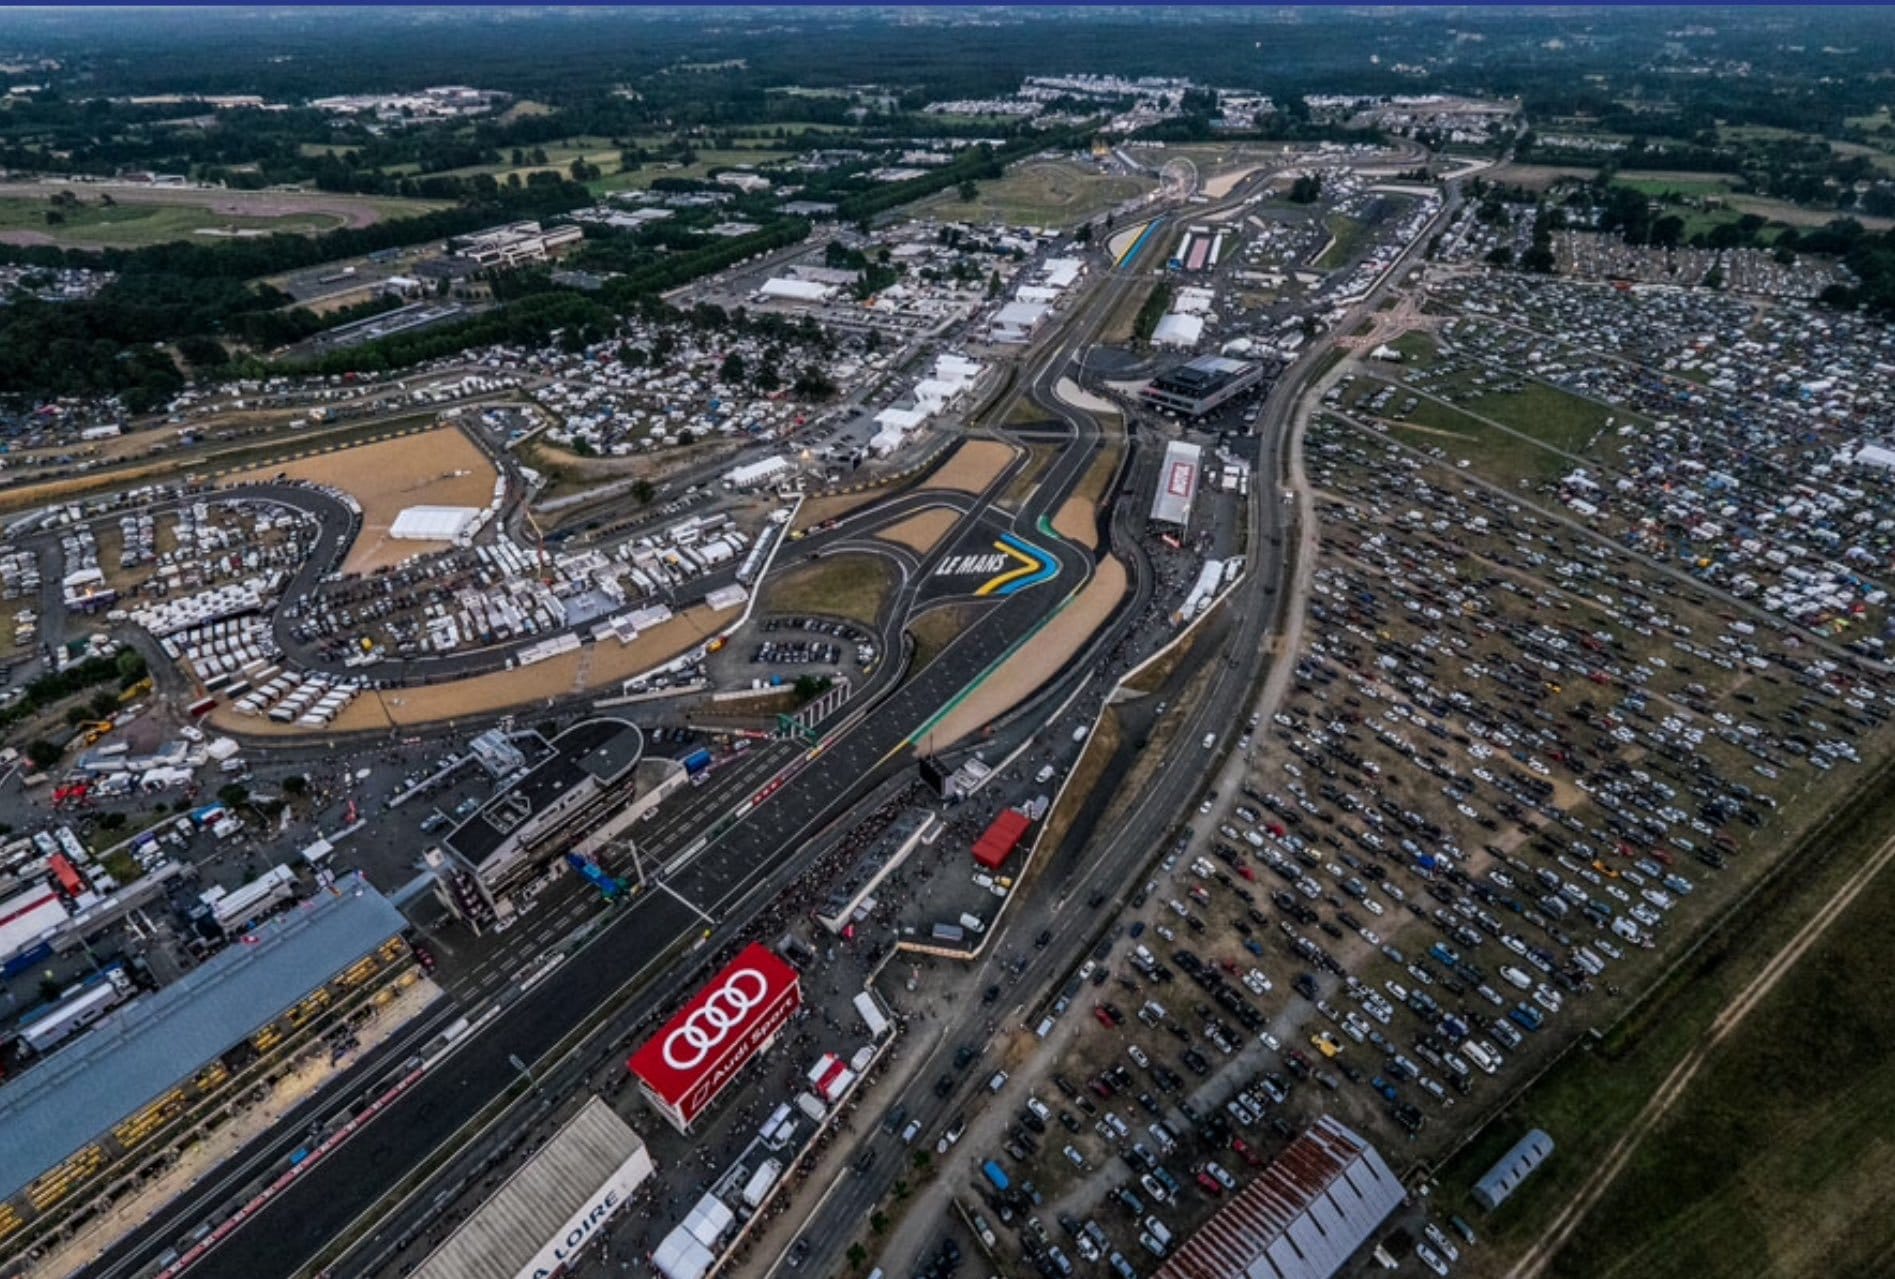 Le circuit des 24 Heures du Mans - Pilote de Course